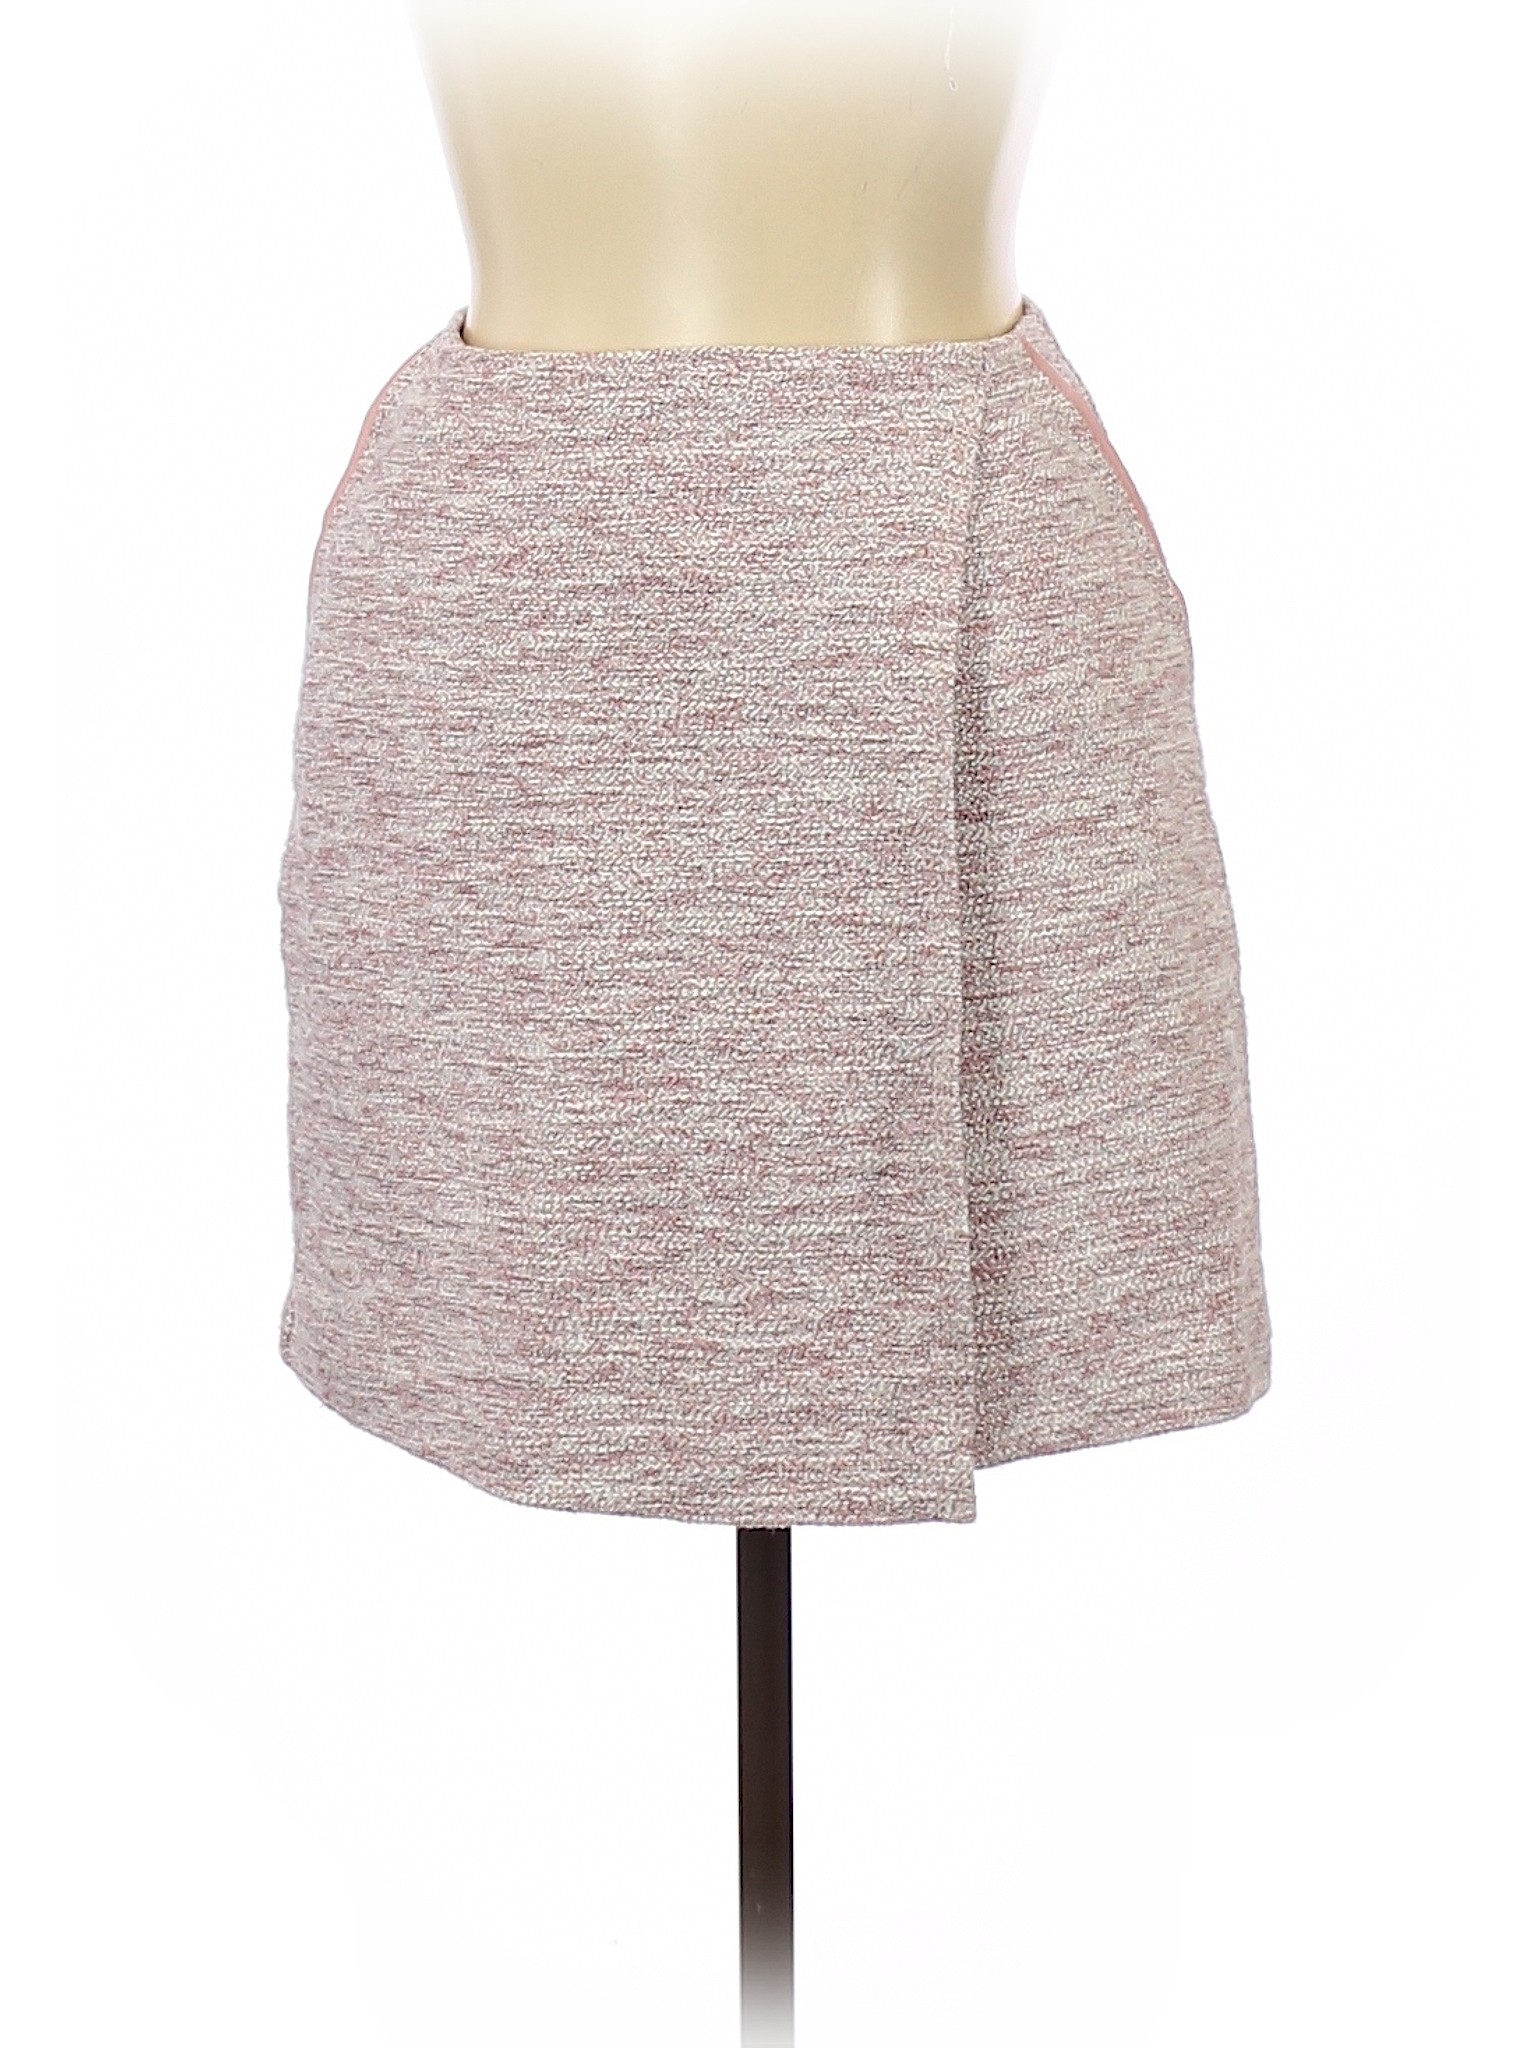 Ann Taylor LOFT Women Pink Casual Skirt 2 | eBay